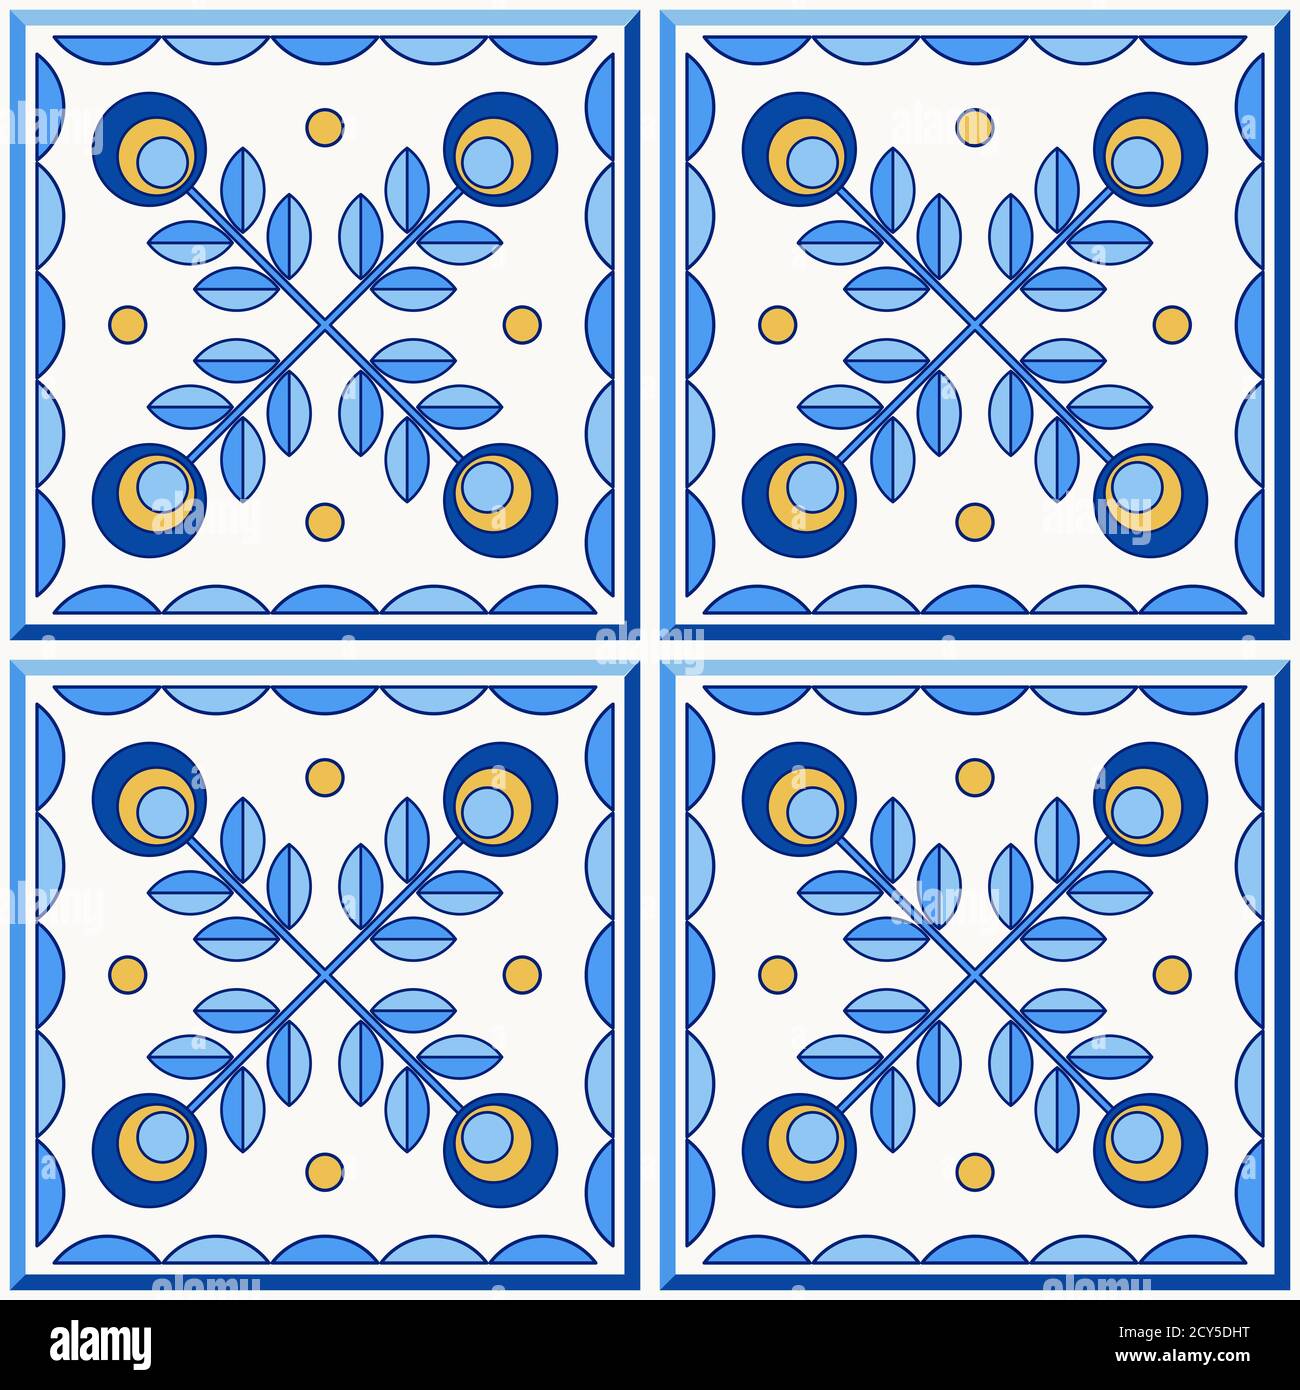 Portugal traditionnel Lisbonne azulejo carreaux de céramique. Illustration vectorielle. Couleurs jaune, bleu et blanc. Ensemble de quatre carreaux de plancher. Motif vectoriel transparent. Illustration de Vecteur